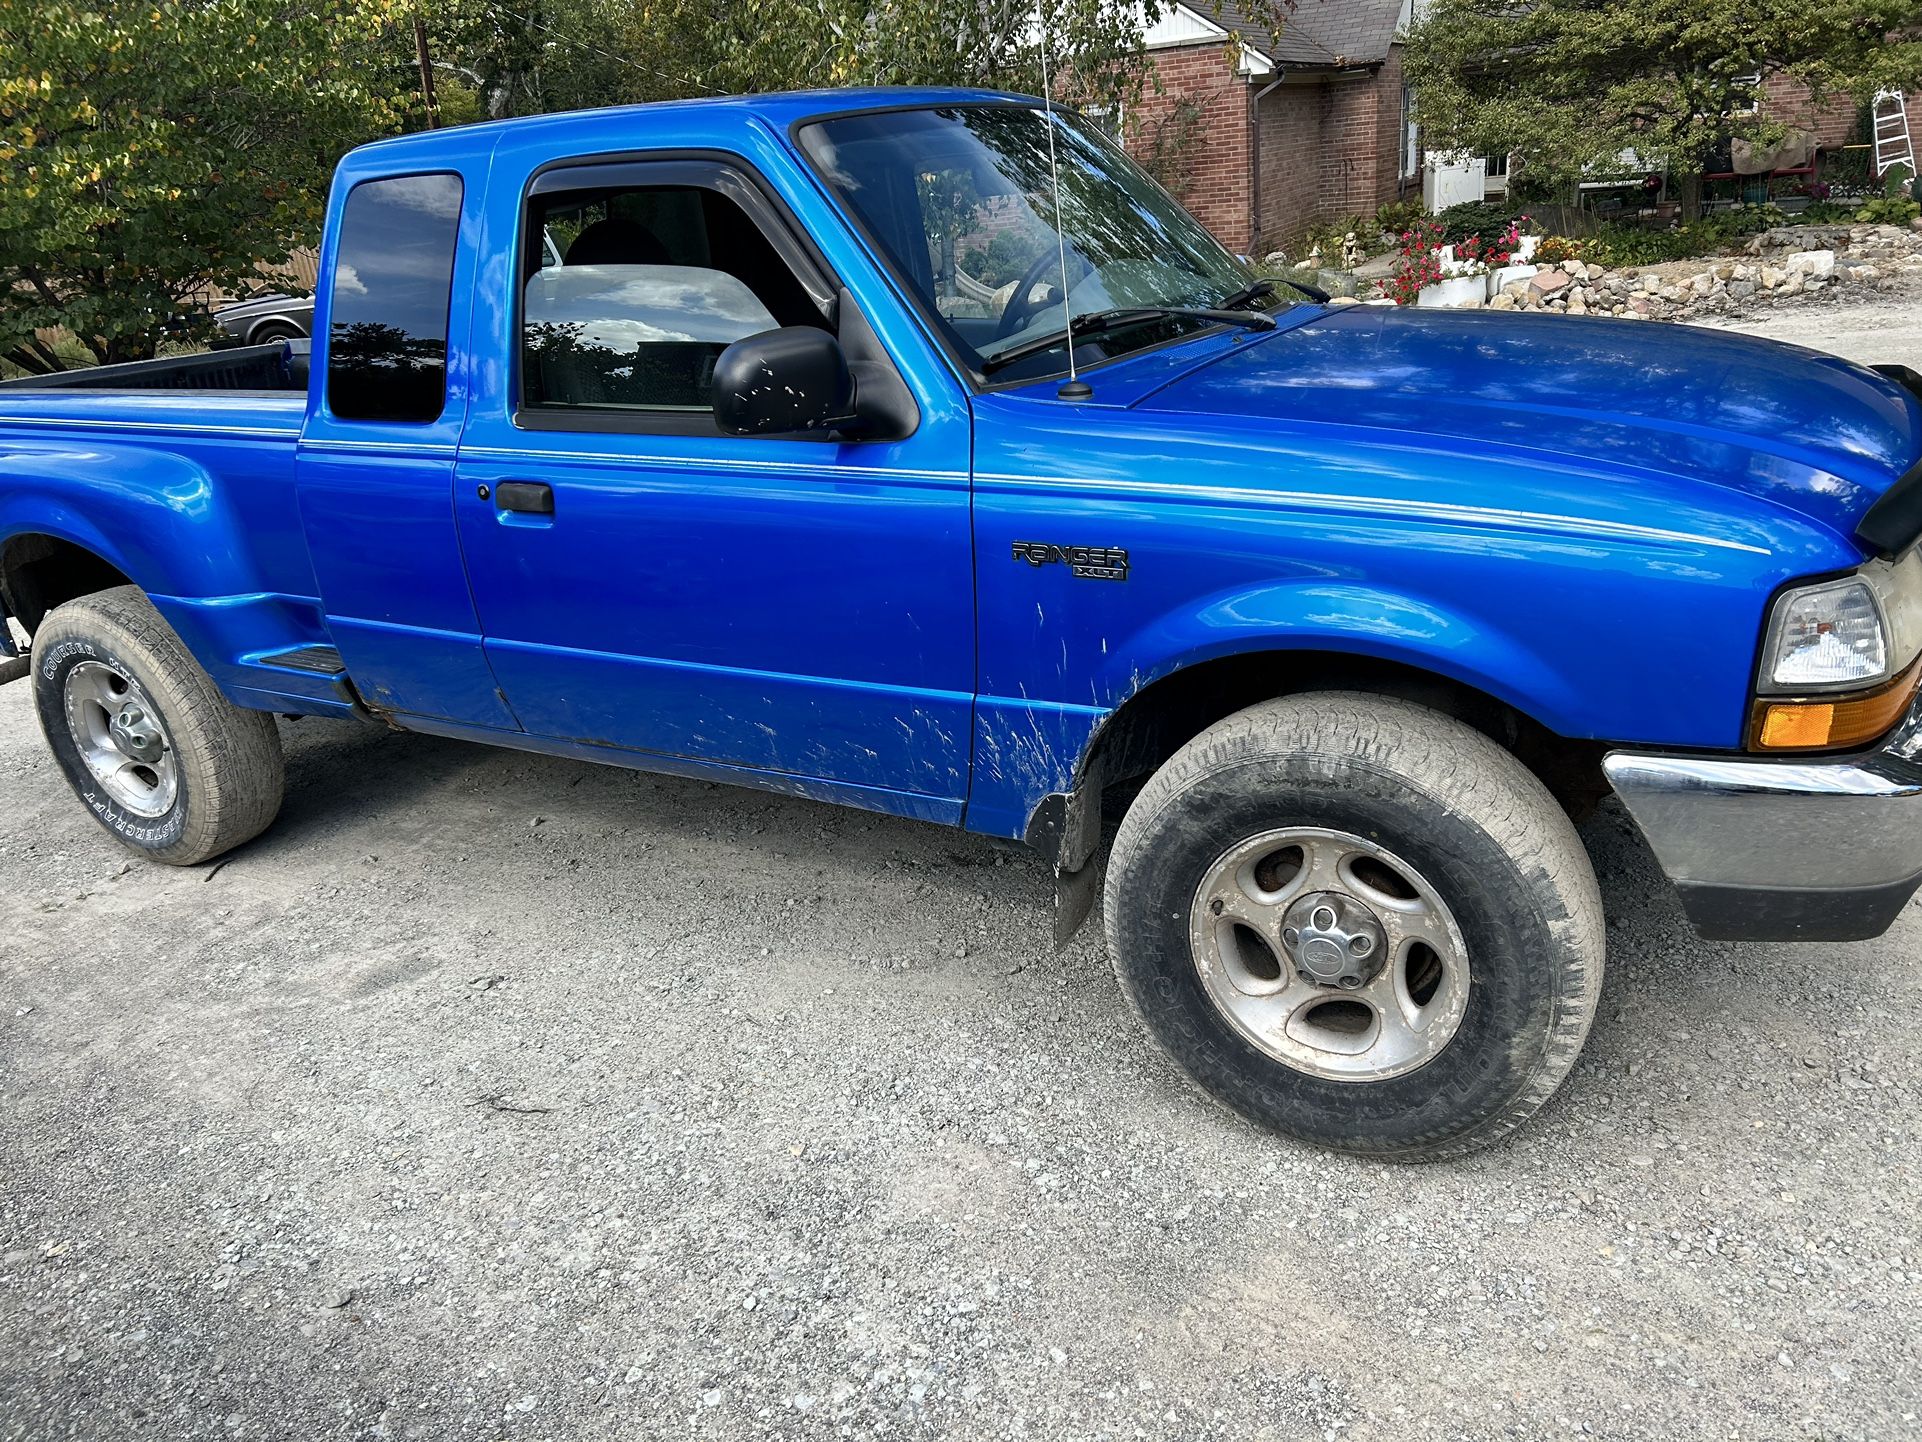 1999 Ford Ranger